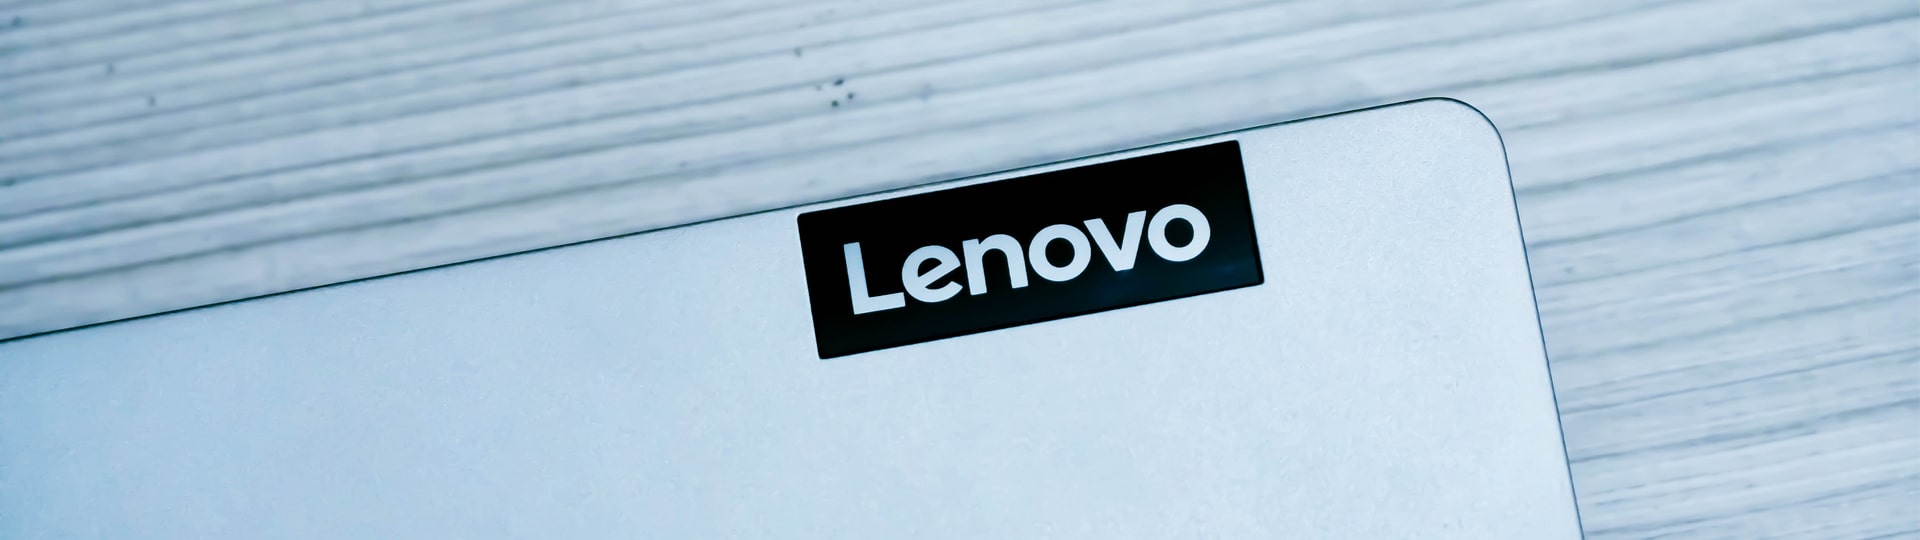 Výrobce počítačů Lenovo zvýšil tržby nejméně za devět čtvrtletí